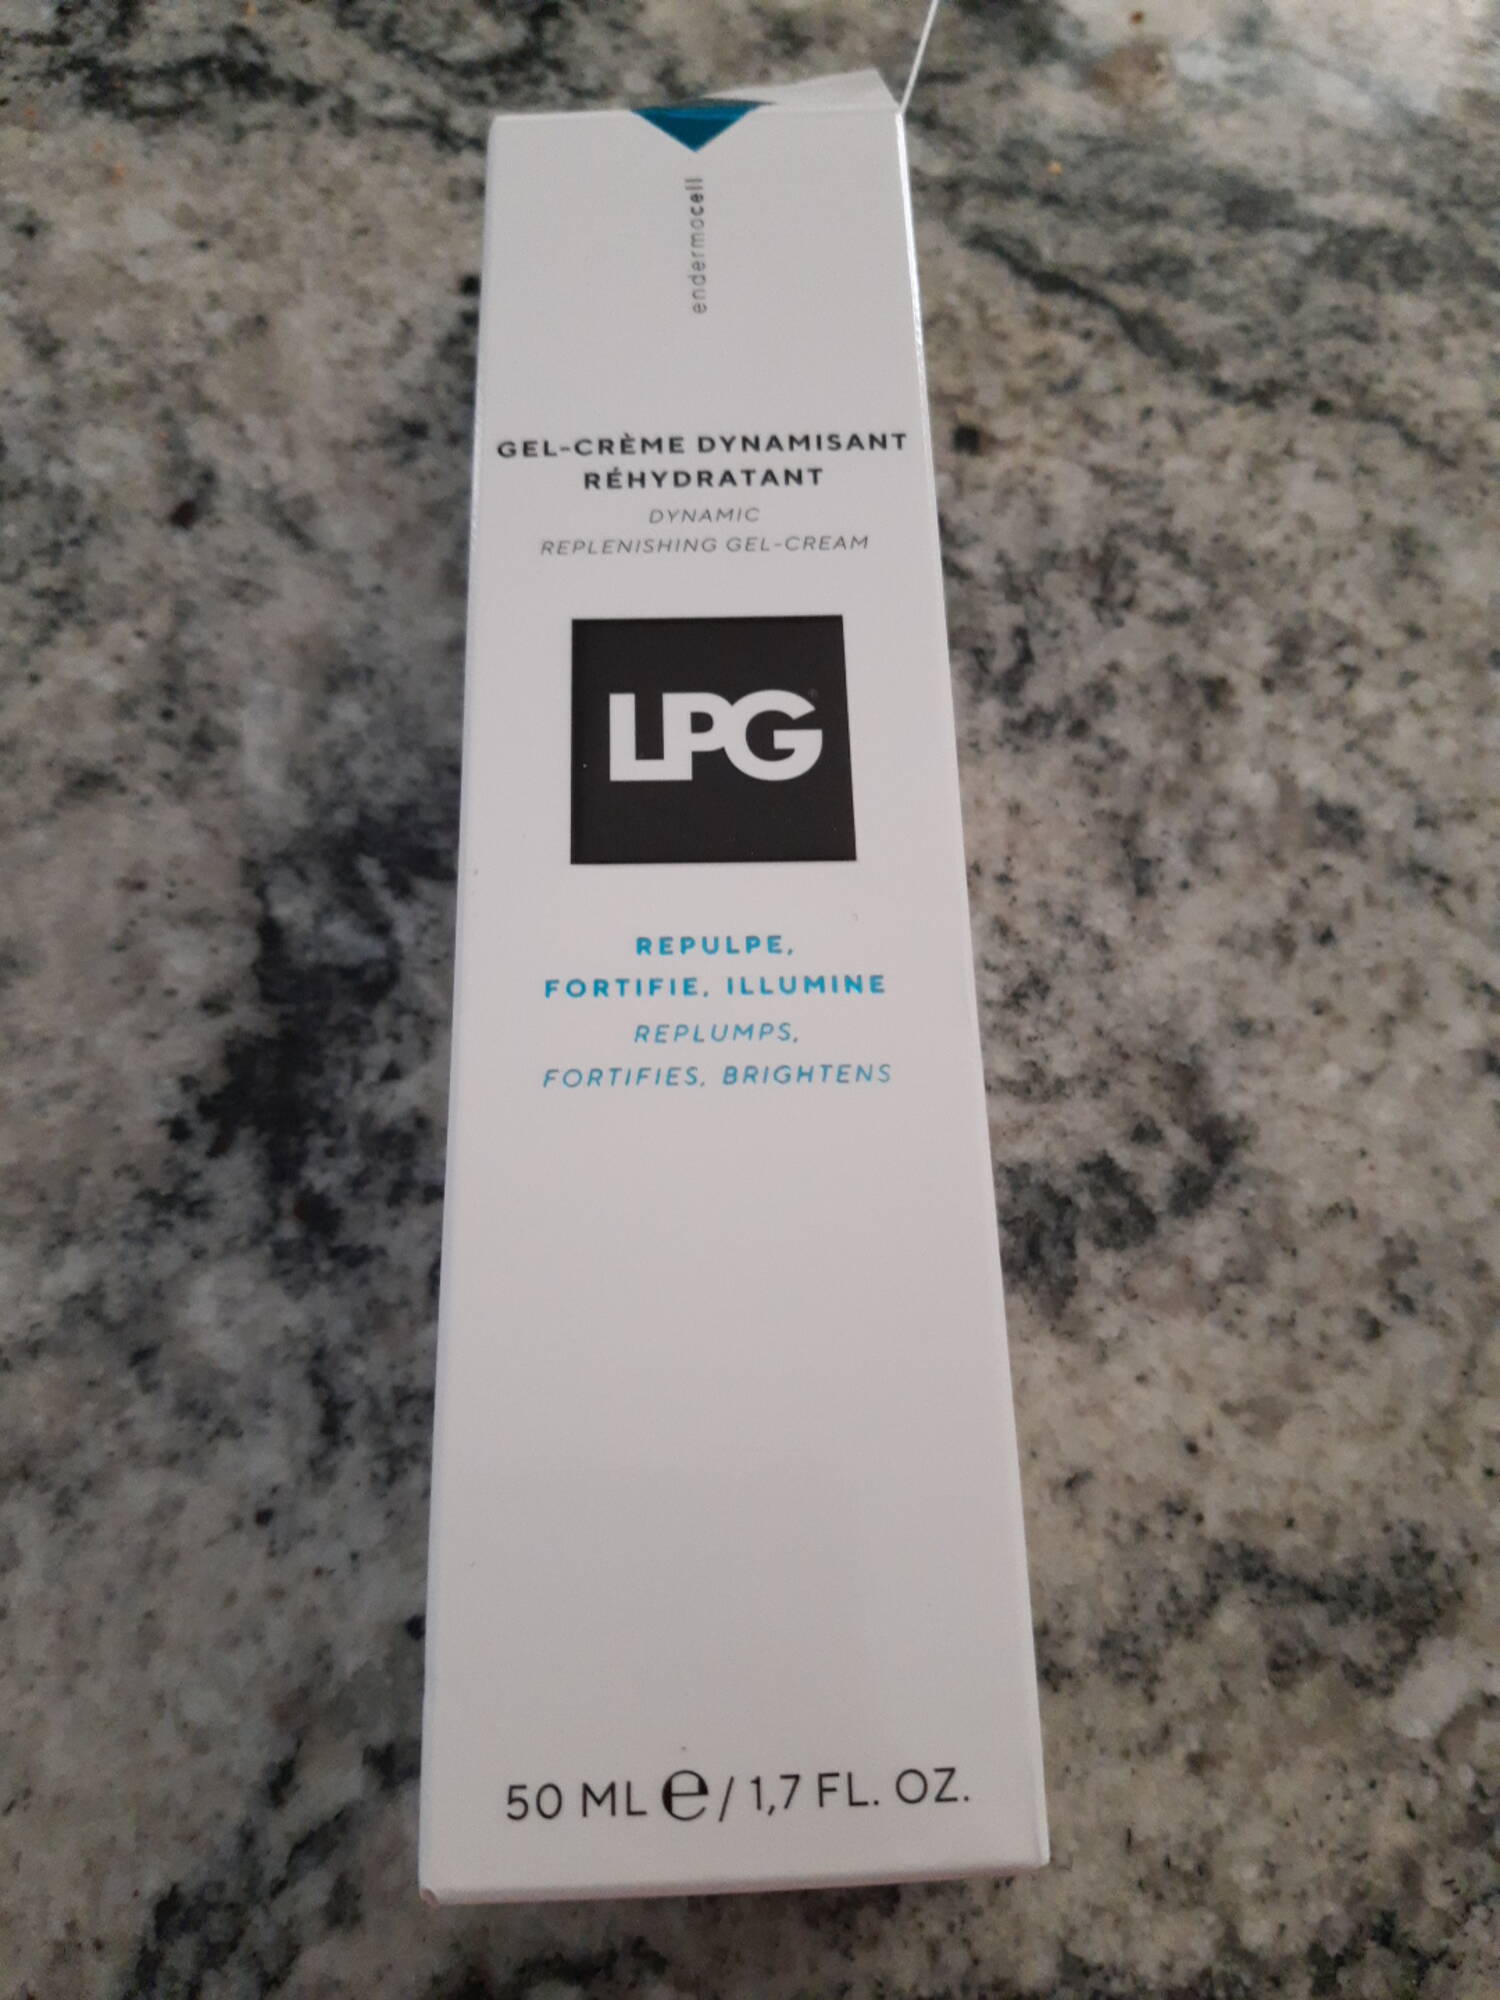 LPG - Gel-crème dynamisant réhydratant